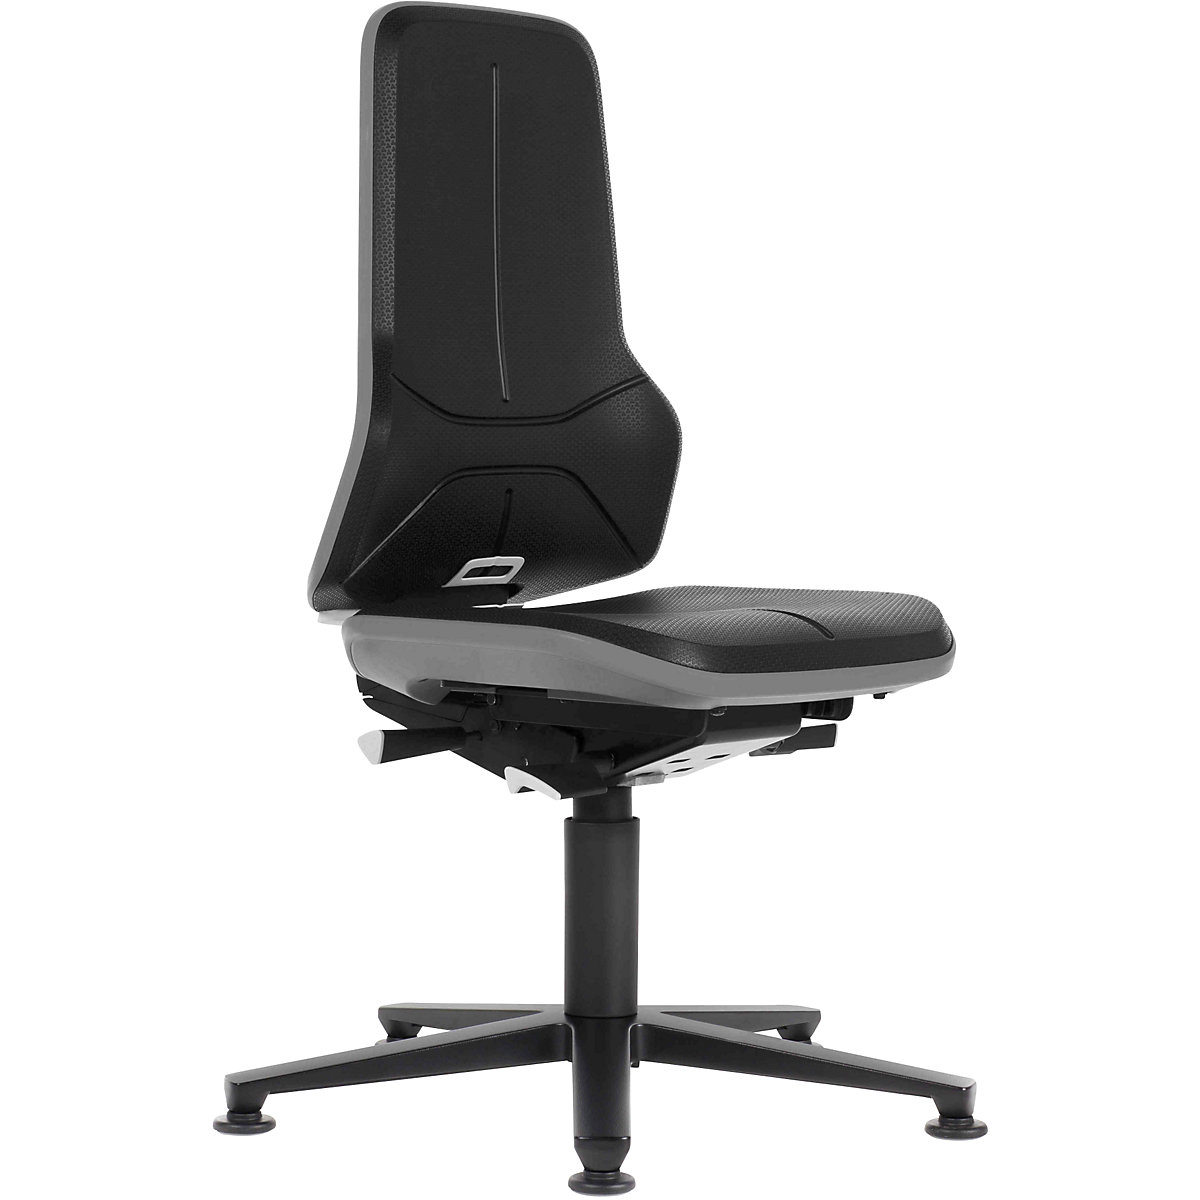 Pracovní otočná židle NEON, patky – bimos, permanentní kontakt, PU lehčená hmota, šedý flexibilní pás-17